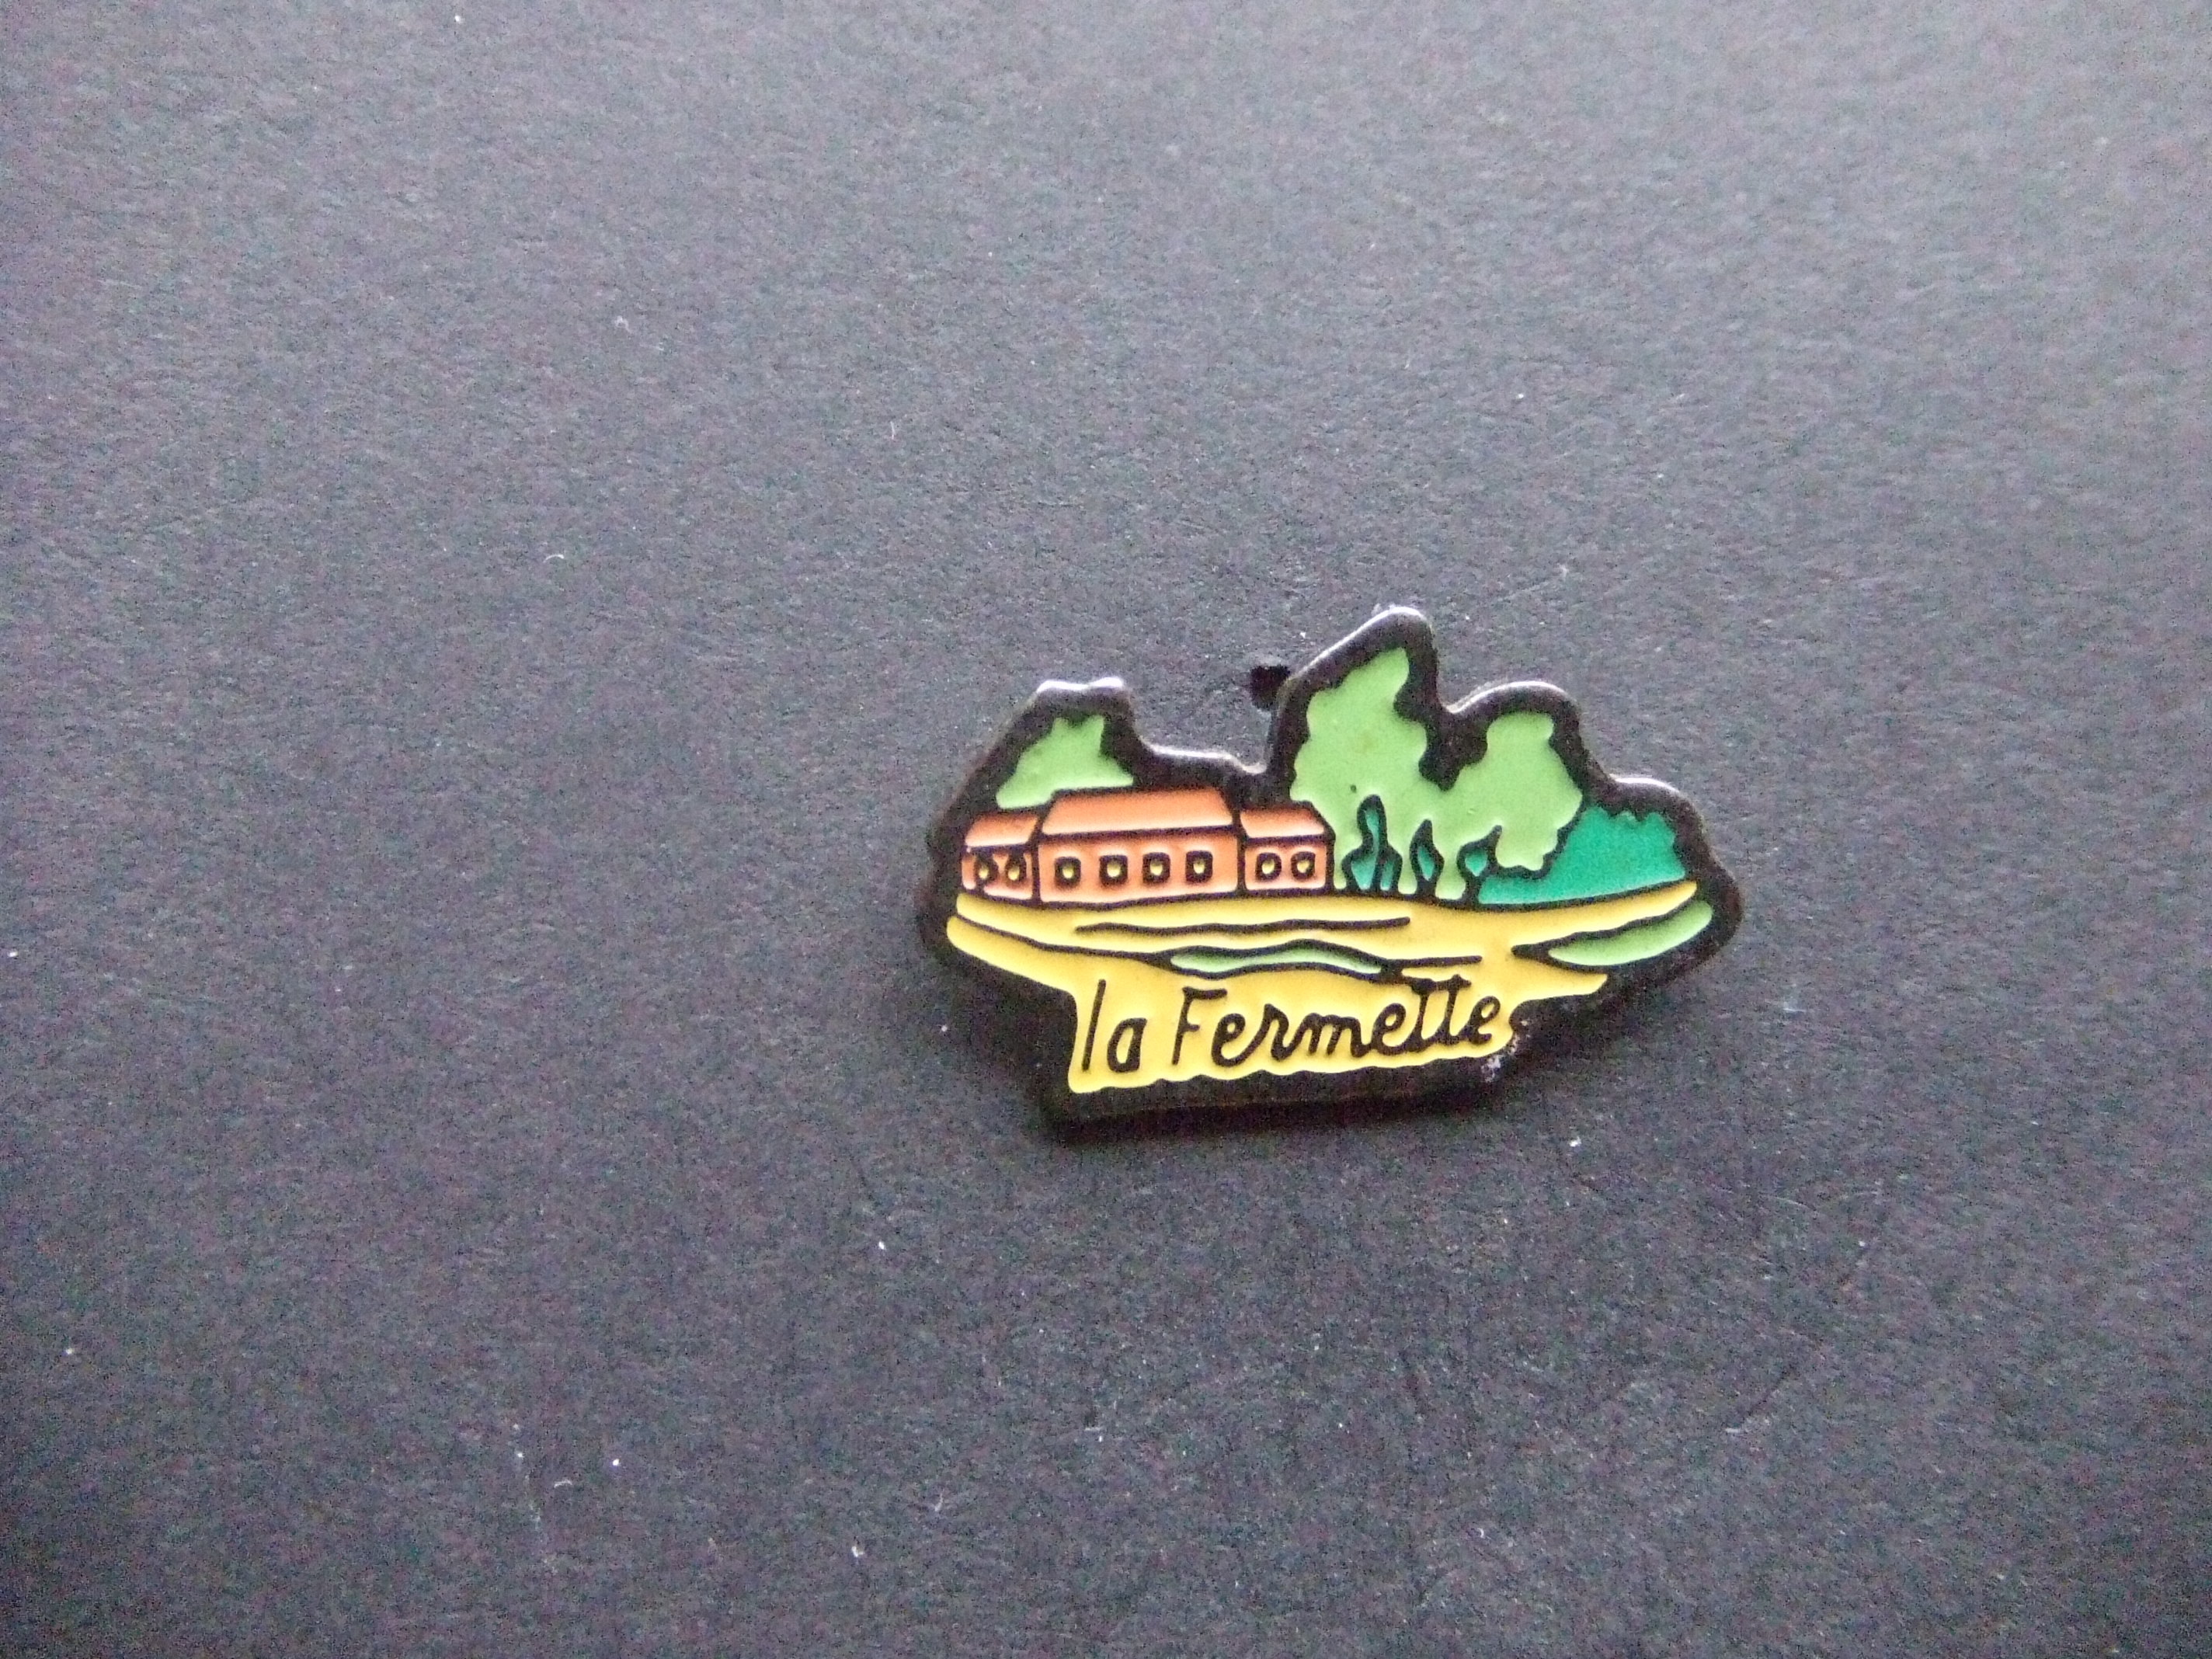 La Fermette plaats in Frankrijk